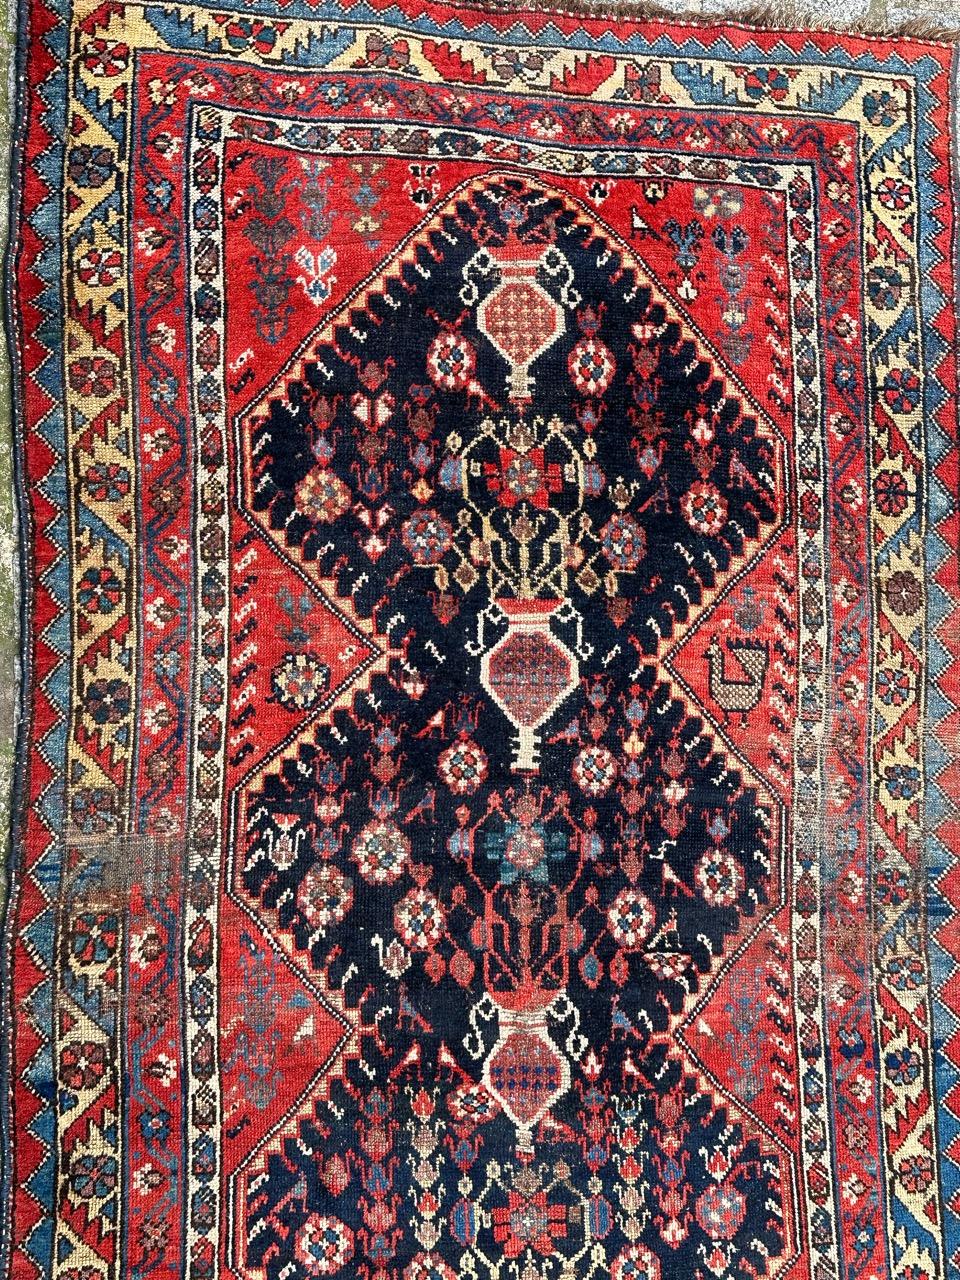 Très beau tapis tribal de la fin du 19ème siècle de la région d'Azerbaïdjan, avec de jolis motifs géométriques et stylisés avec des pots de fleurs, des animaux et d'autres motifs stylisés, et de jolies couleurs naturelles, entièrement noué à la main